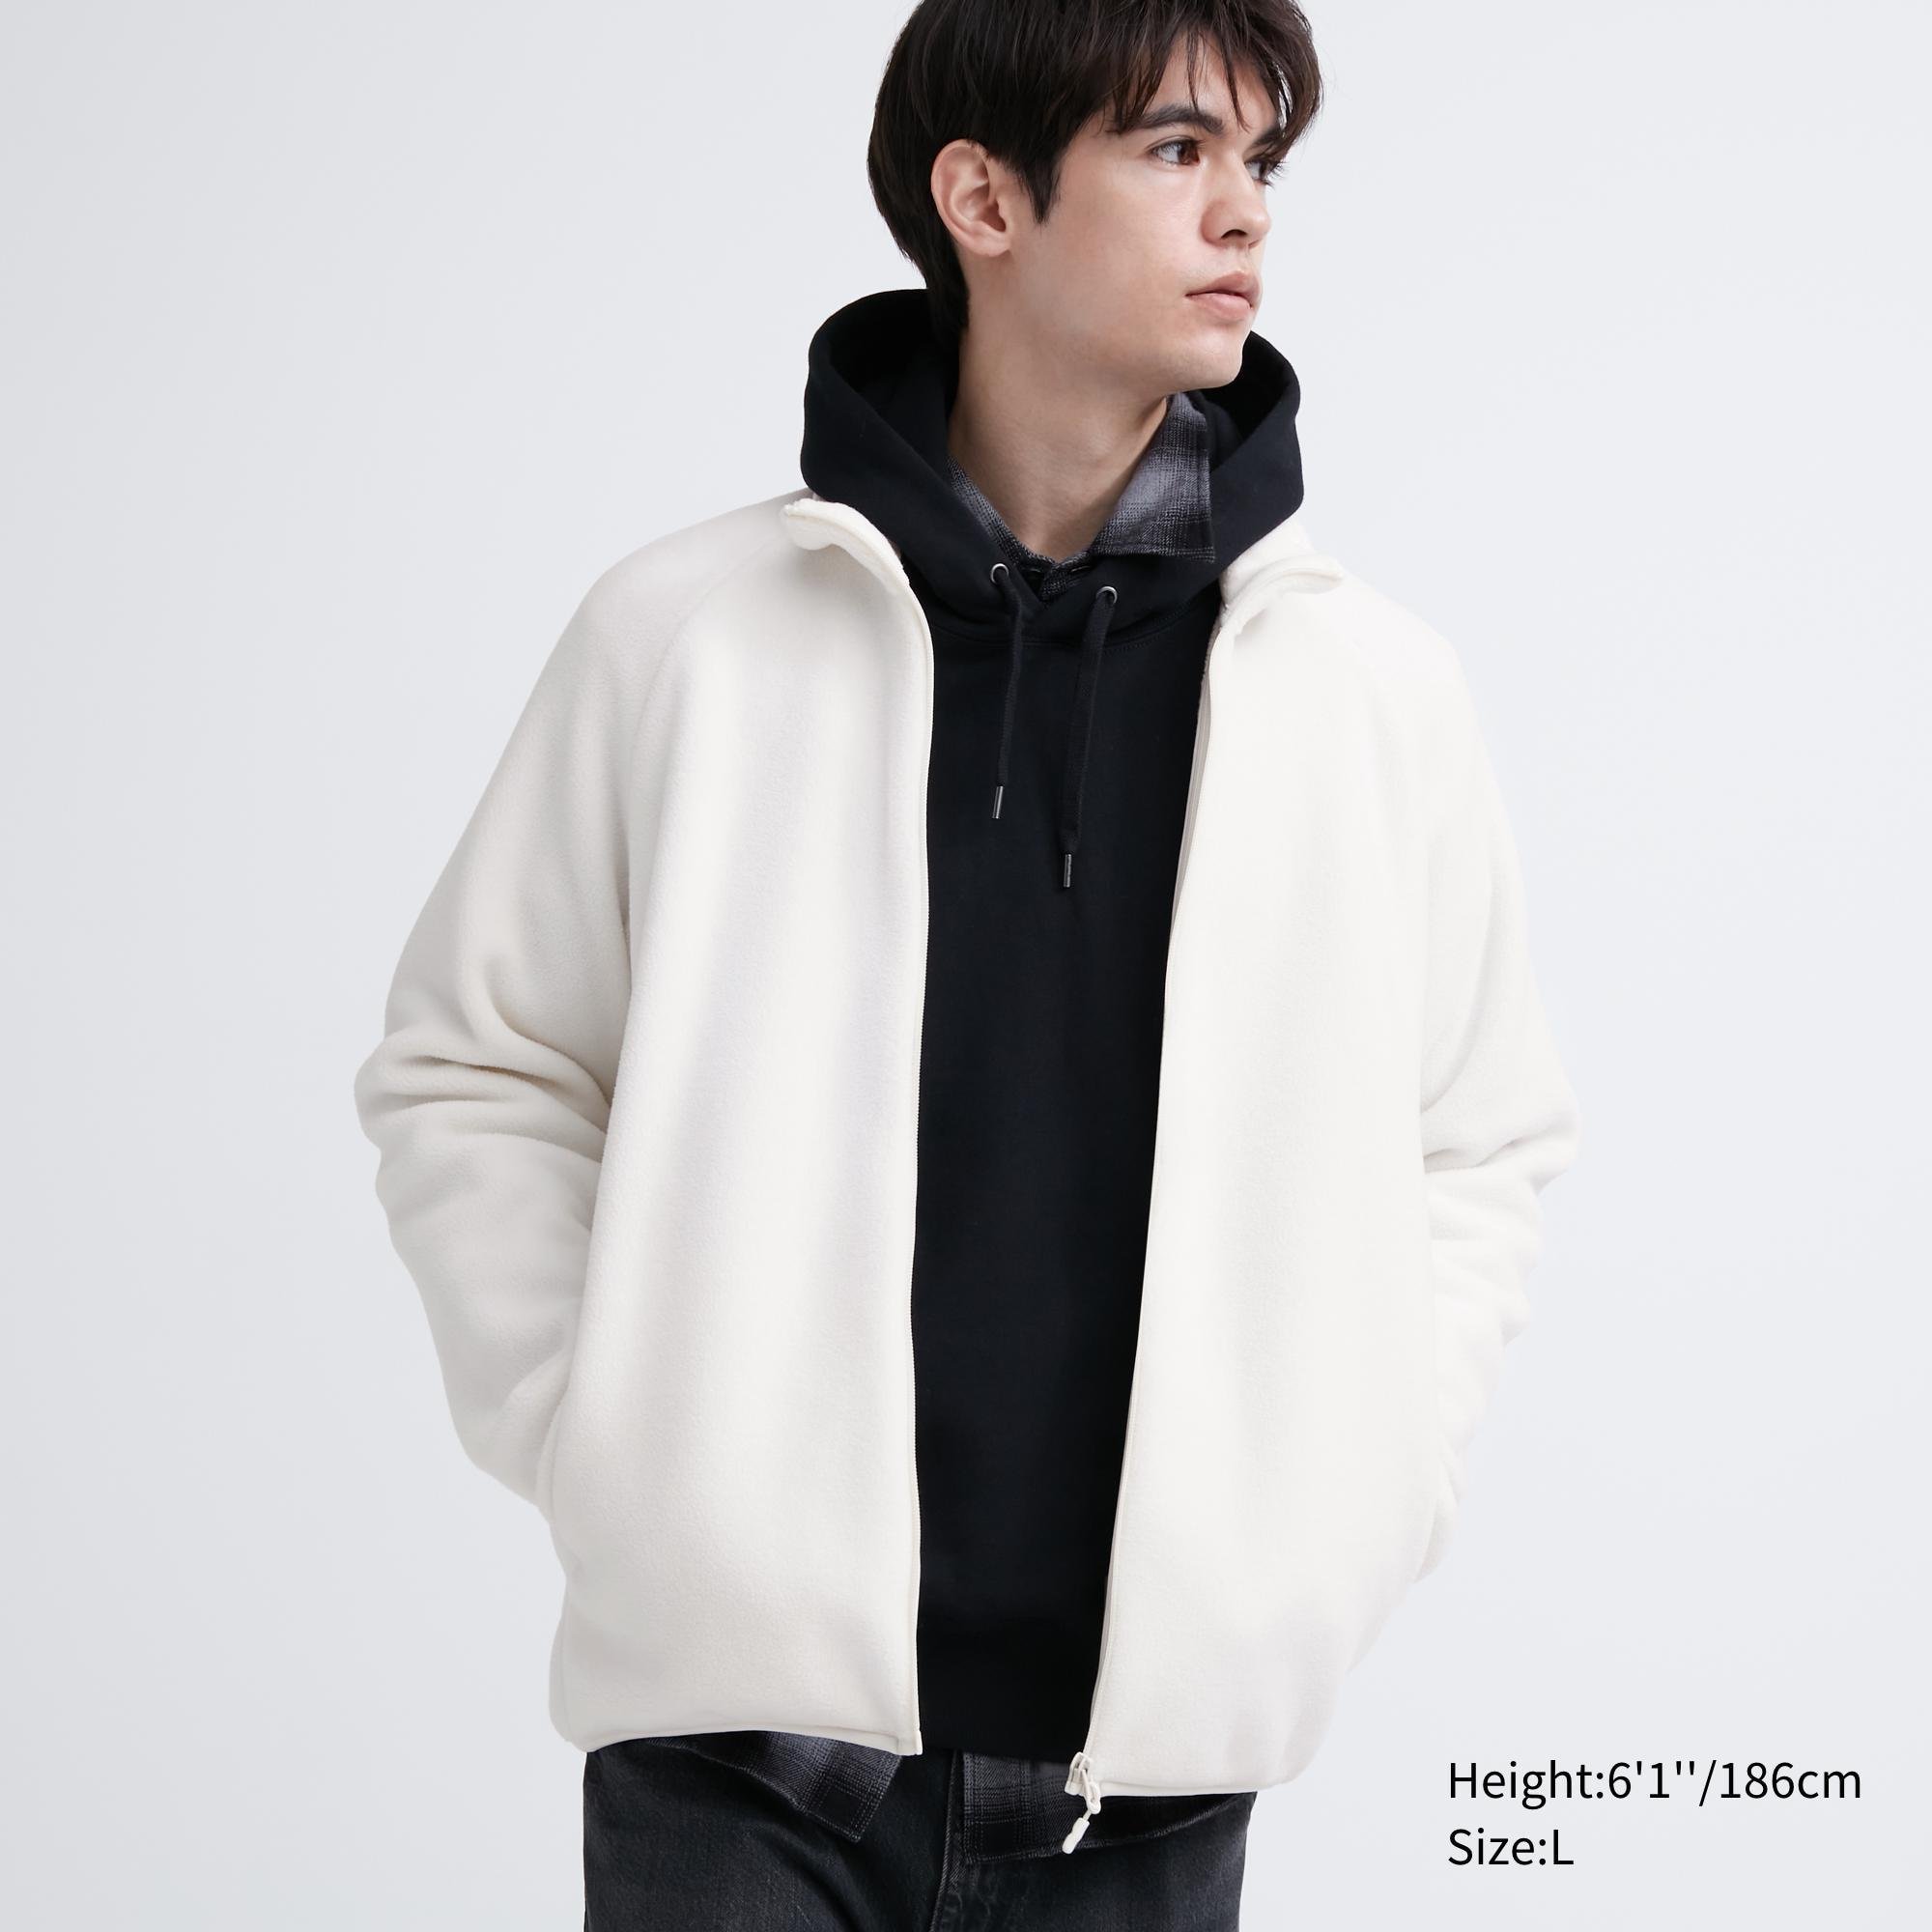 Fleece Full-Zip Jacket by UNIQLO